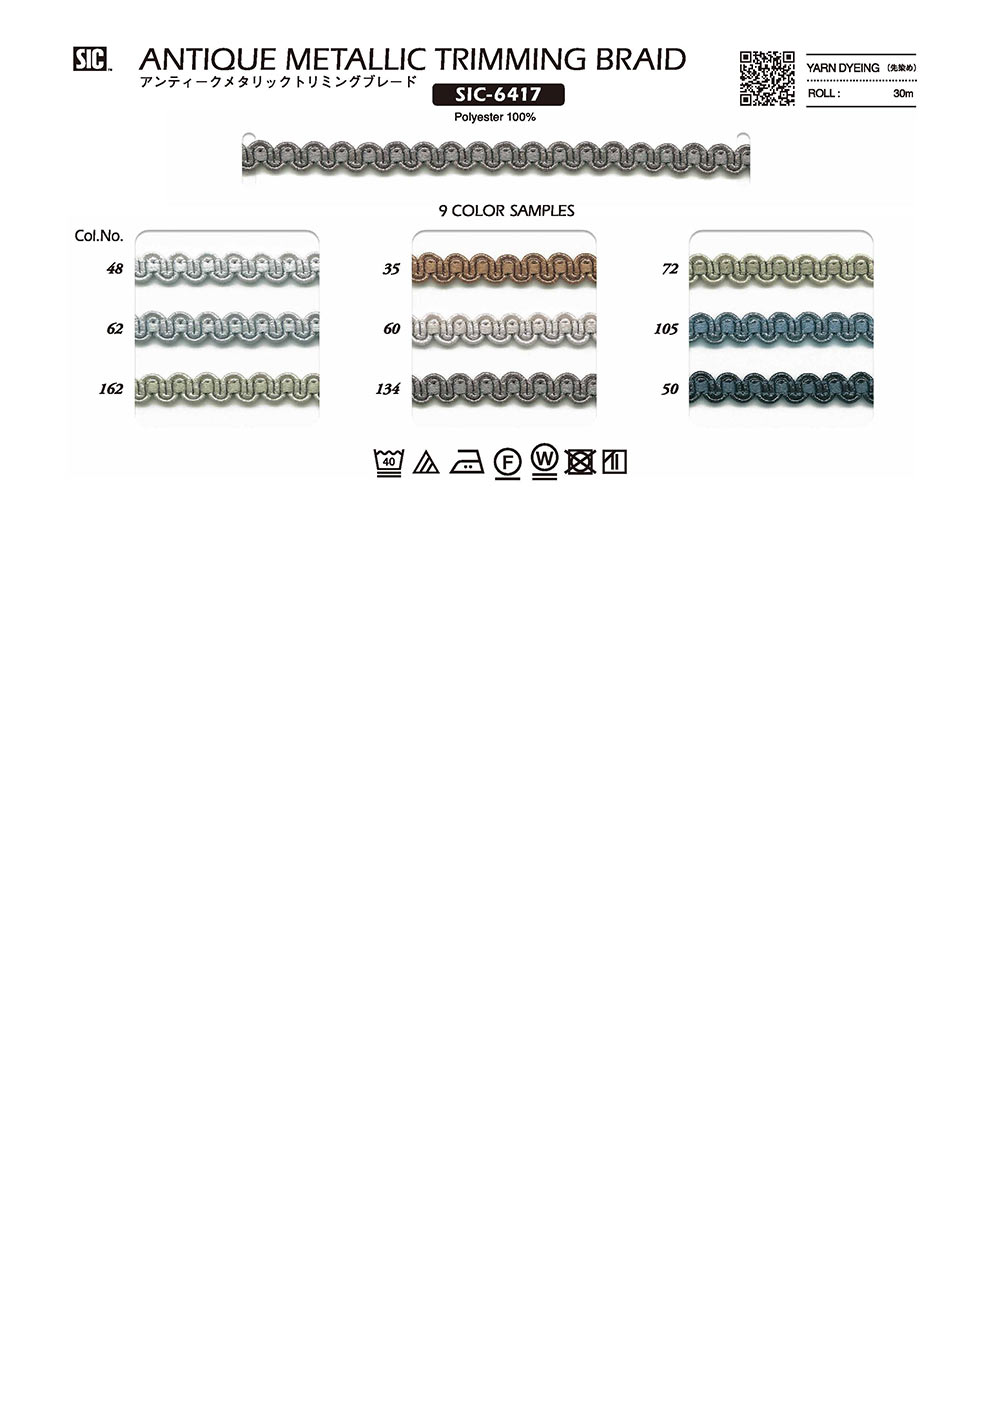 SIC-6417 골동품 메탈릭 트림 블레이드[리본 테이프 코드] SHINDO(SIC)